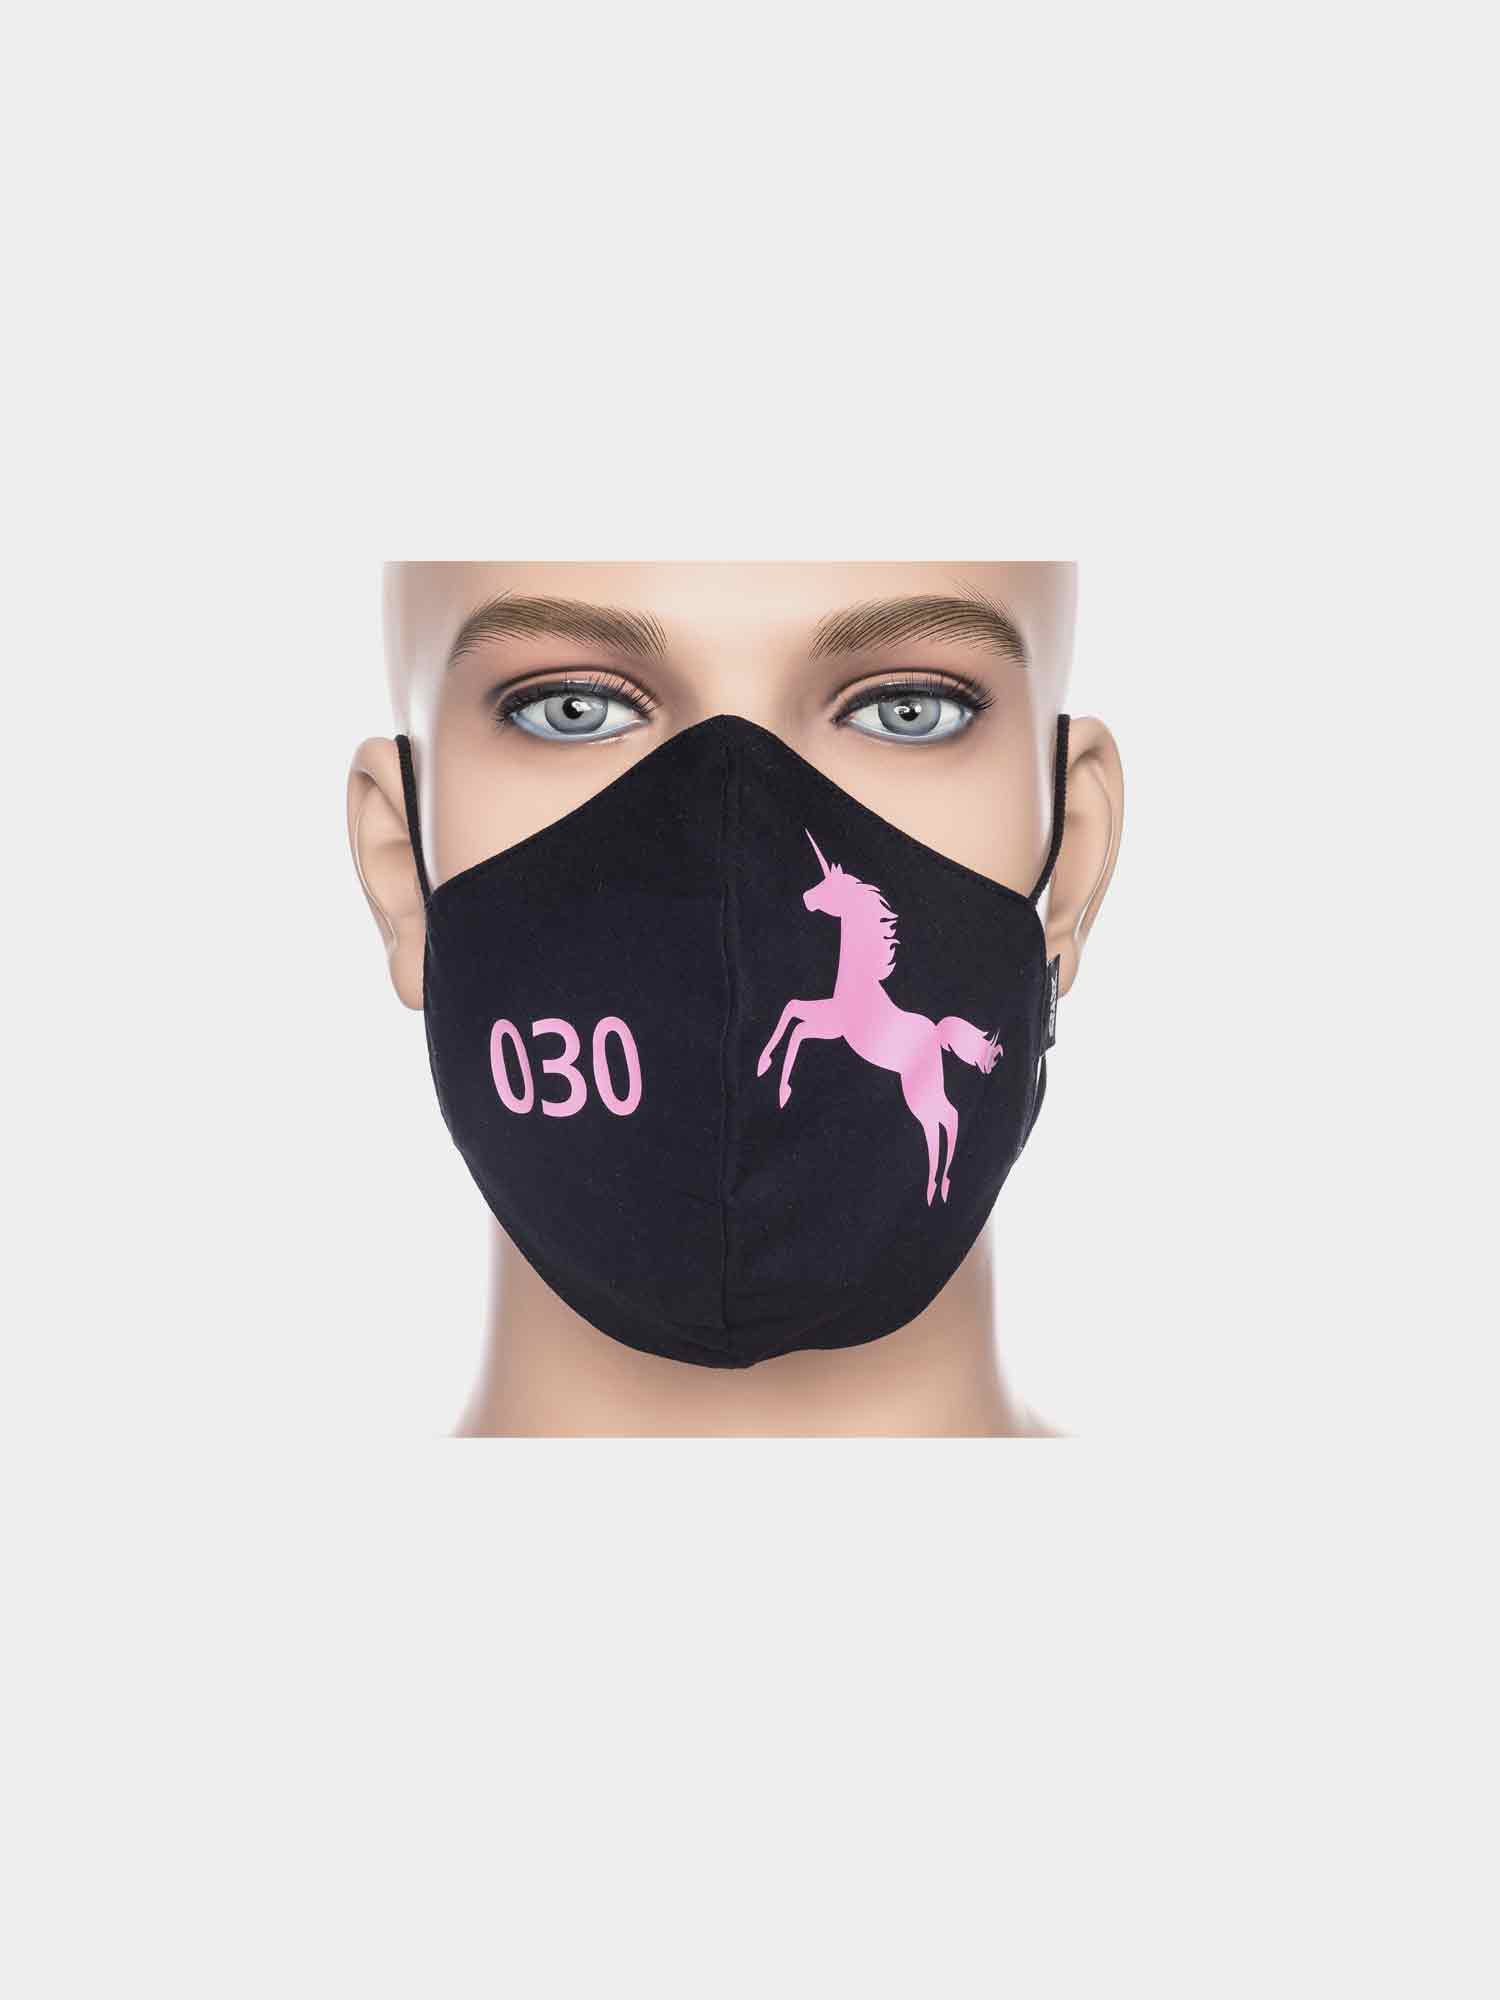 ATO Maske 030 Einhorn schwarz/pink